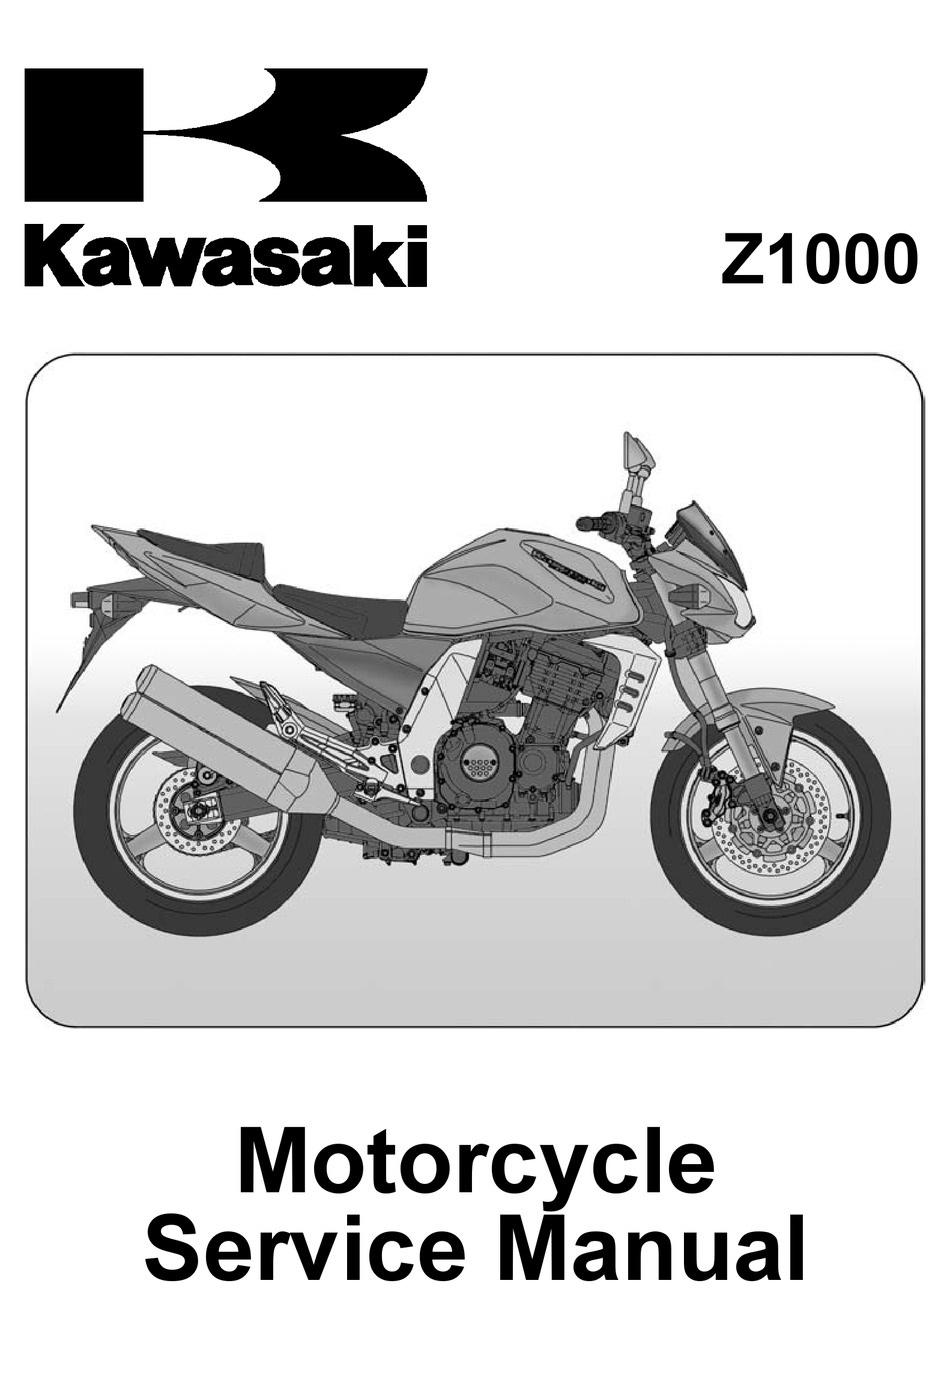 KAWASAKI Z1000 SERVICE MANUAL Pdf Download |